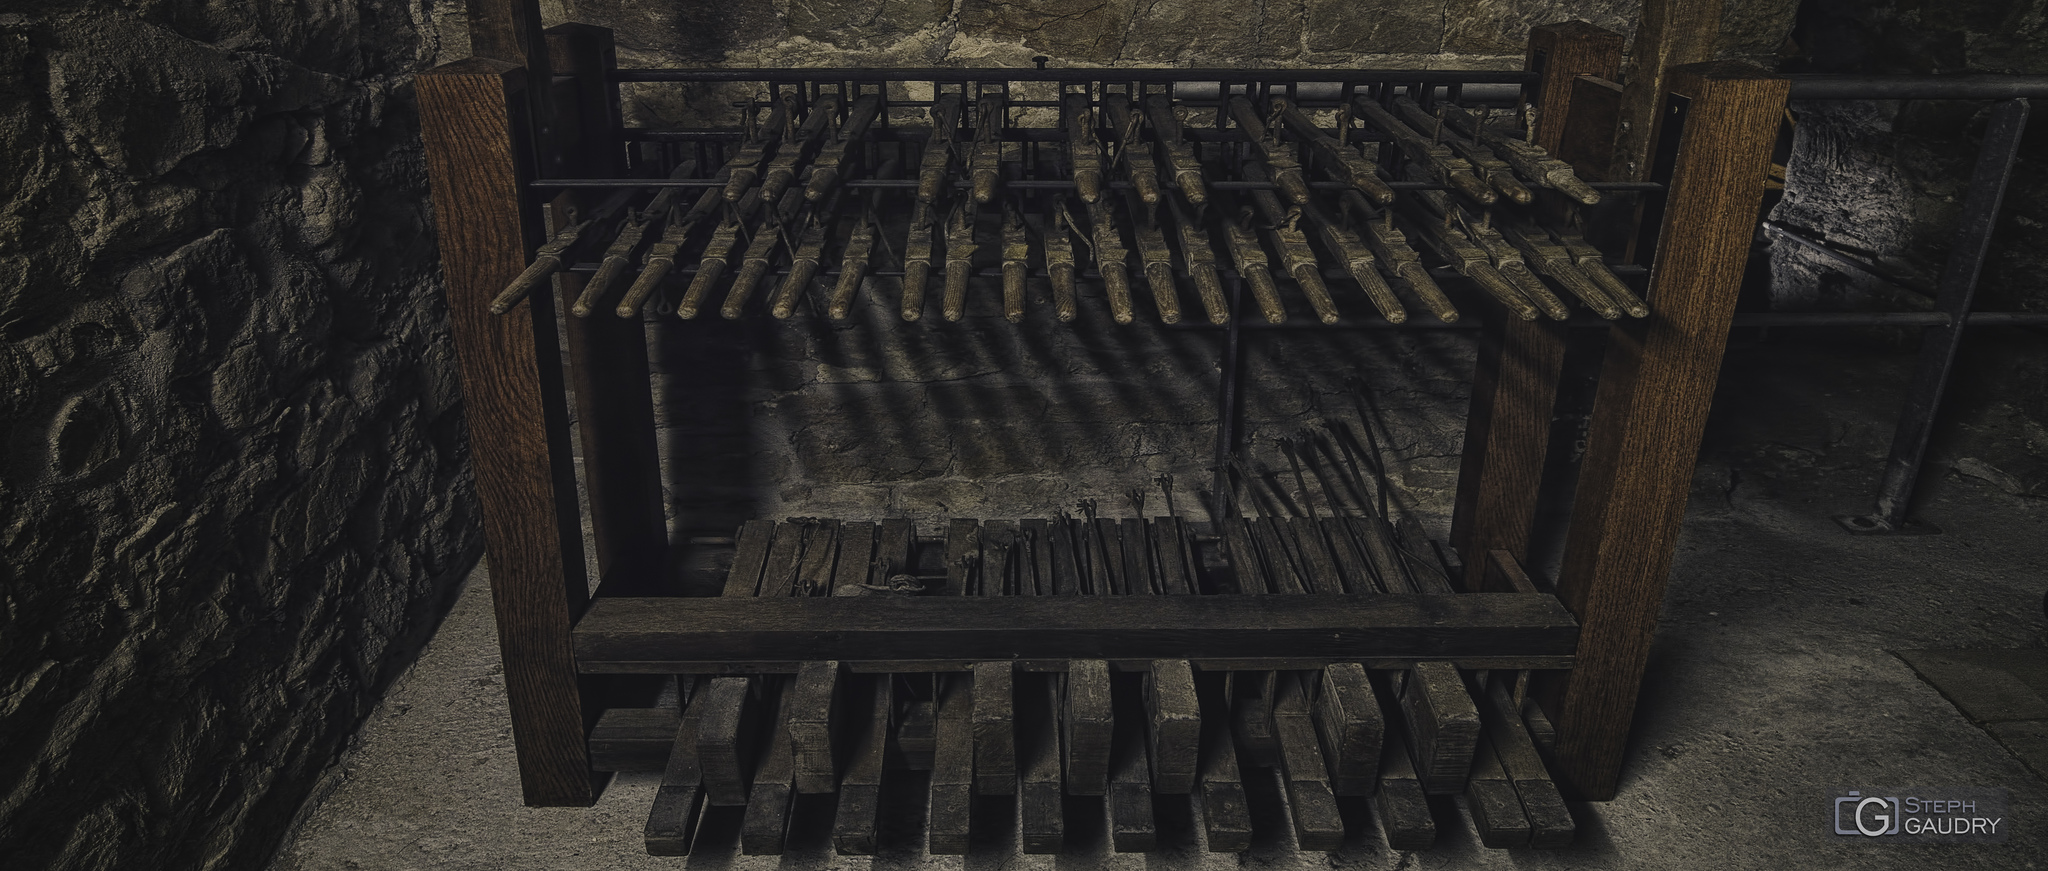 Clavier du carillon de la collégiale Saint-Barthélemy [Klicken Sie hier, um die Diashow zu starten]